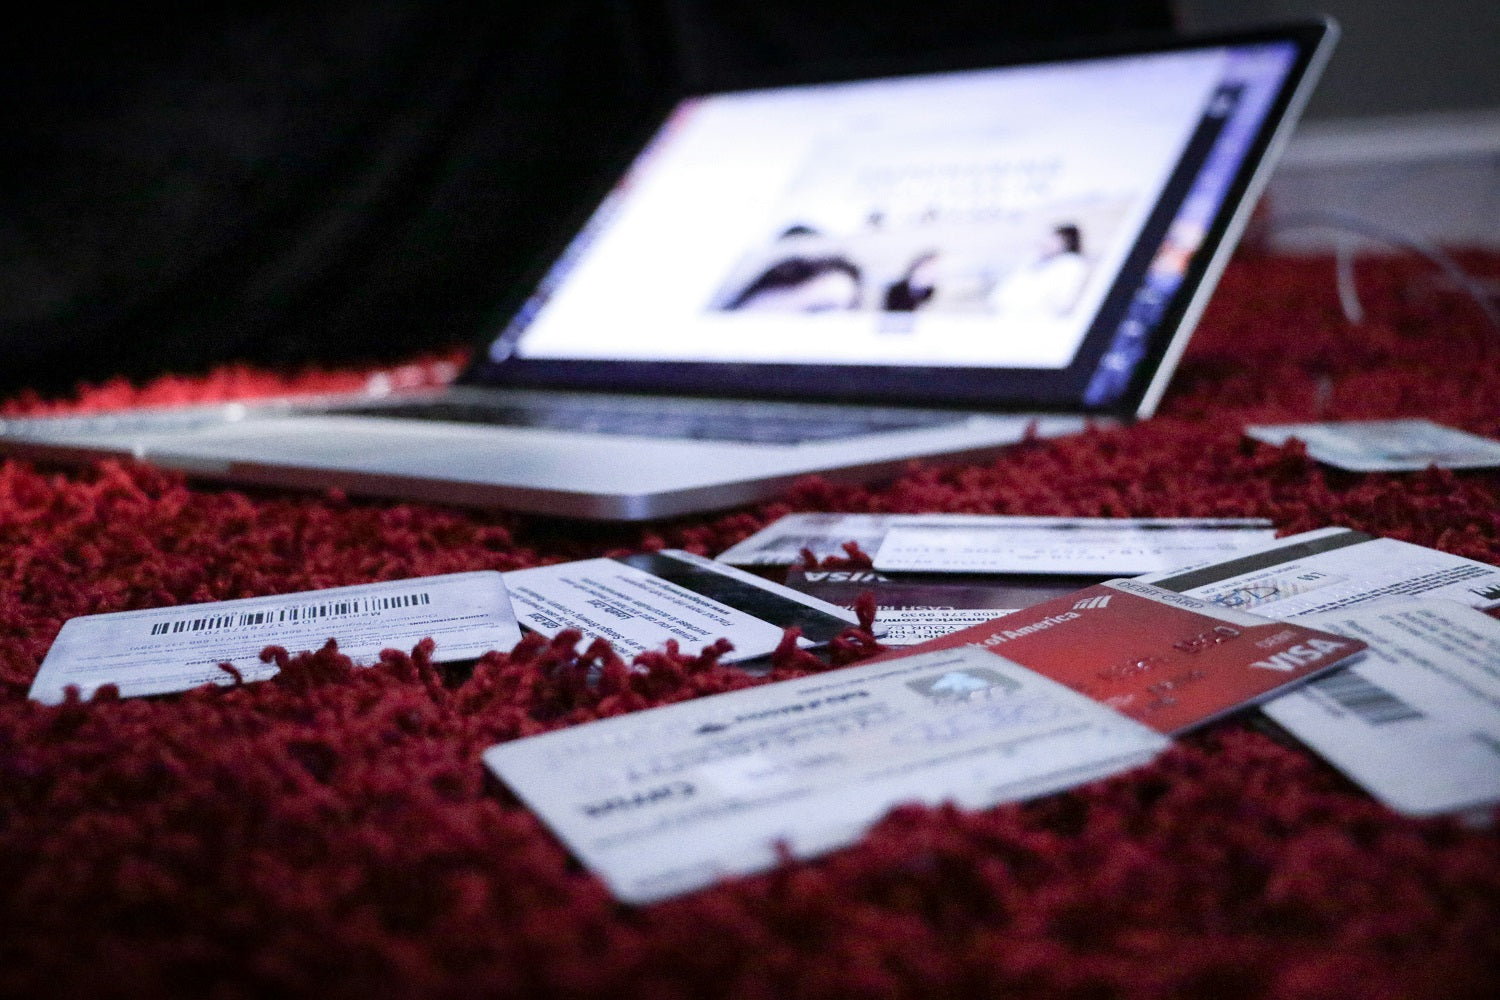 Das Foto zeigt einen aufgeklappten Laptop um den verschiedene Kreditkarten verteilt liegen.